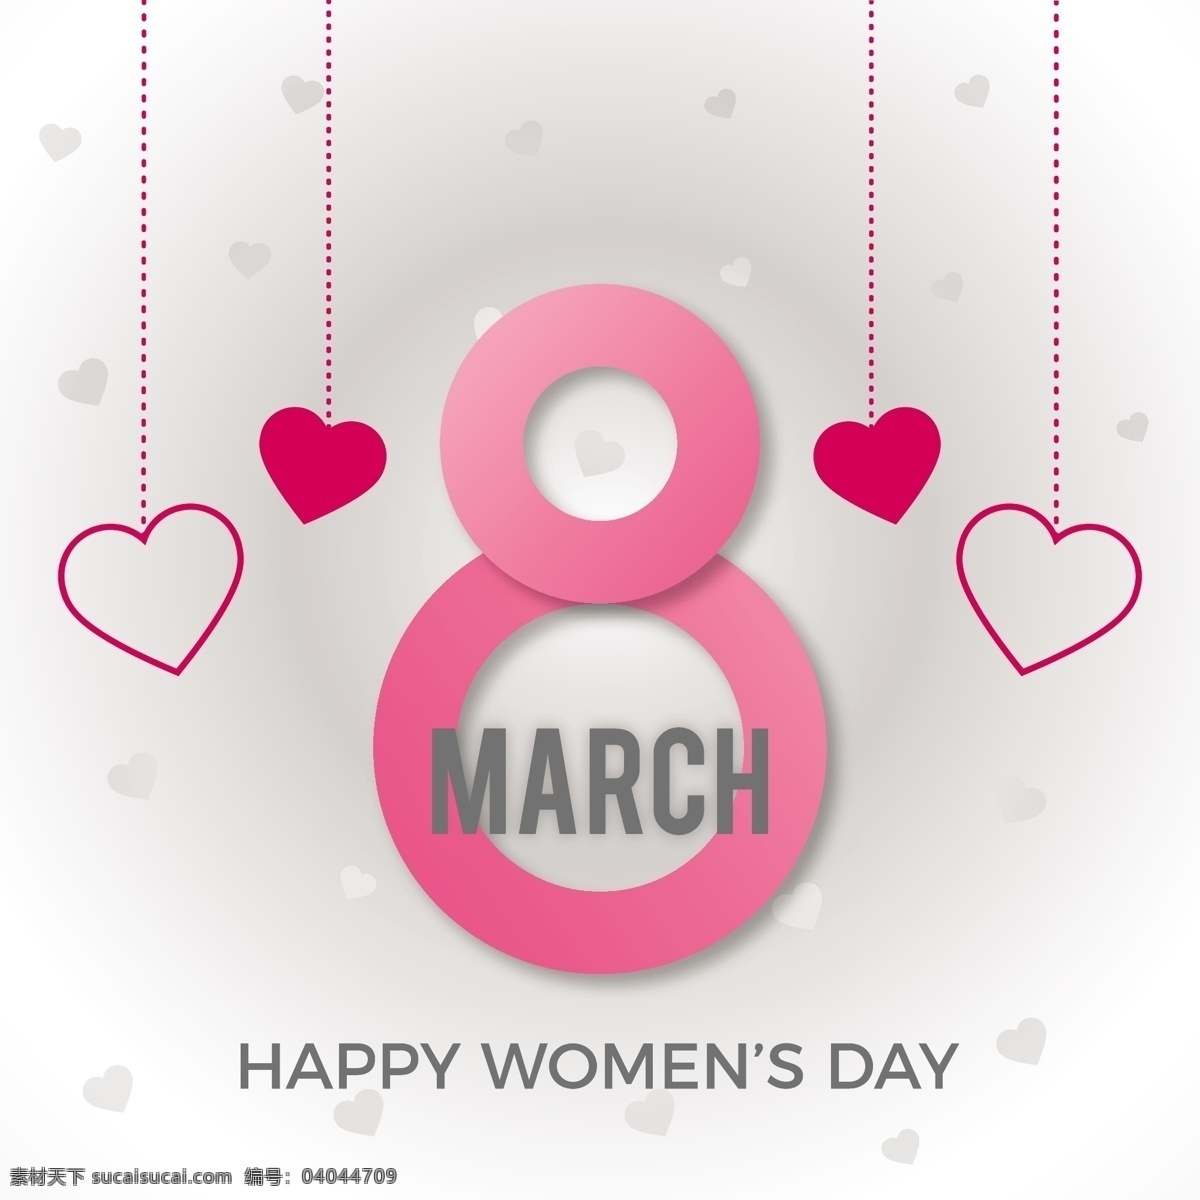 国际妇女节 背景 粉红色 庆祝 假日 女士 女性 自由 国际 游行 妇女 平等